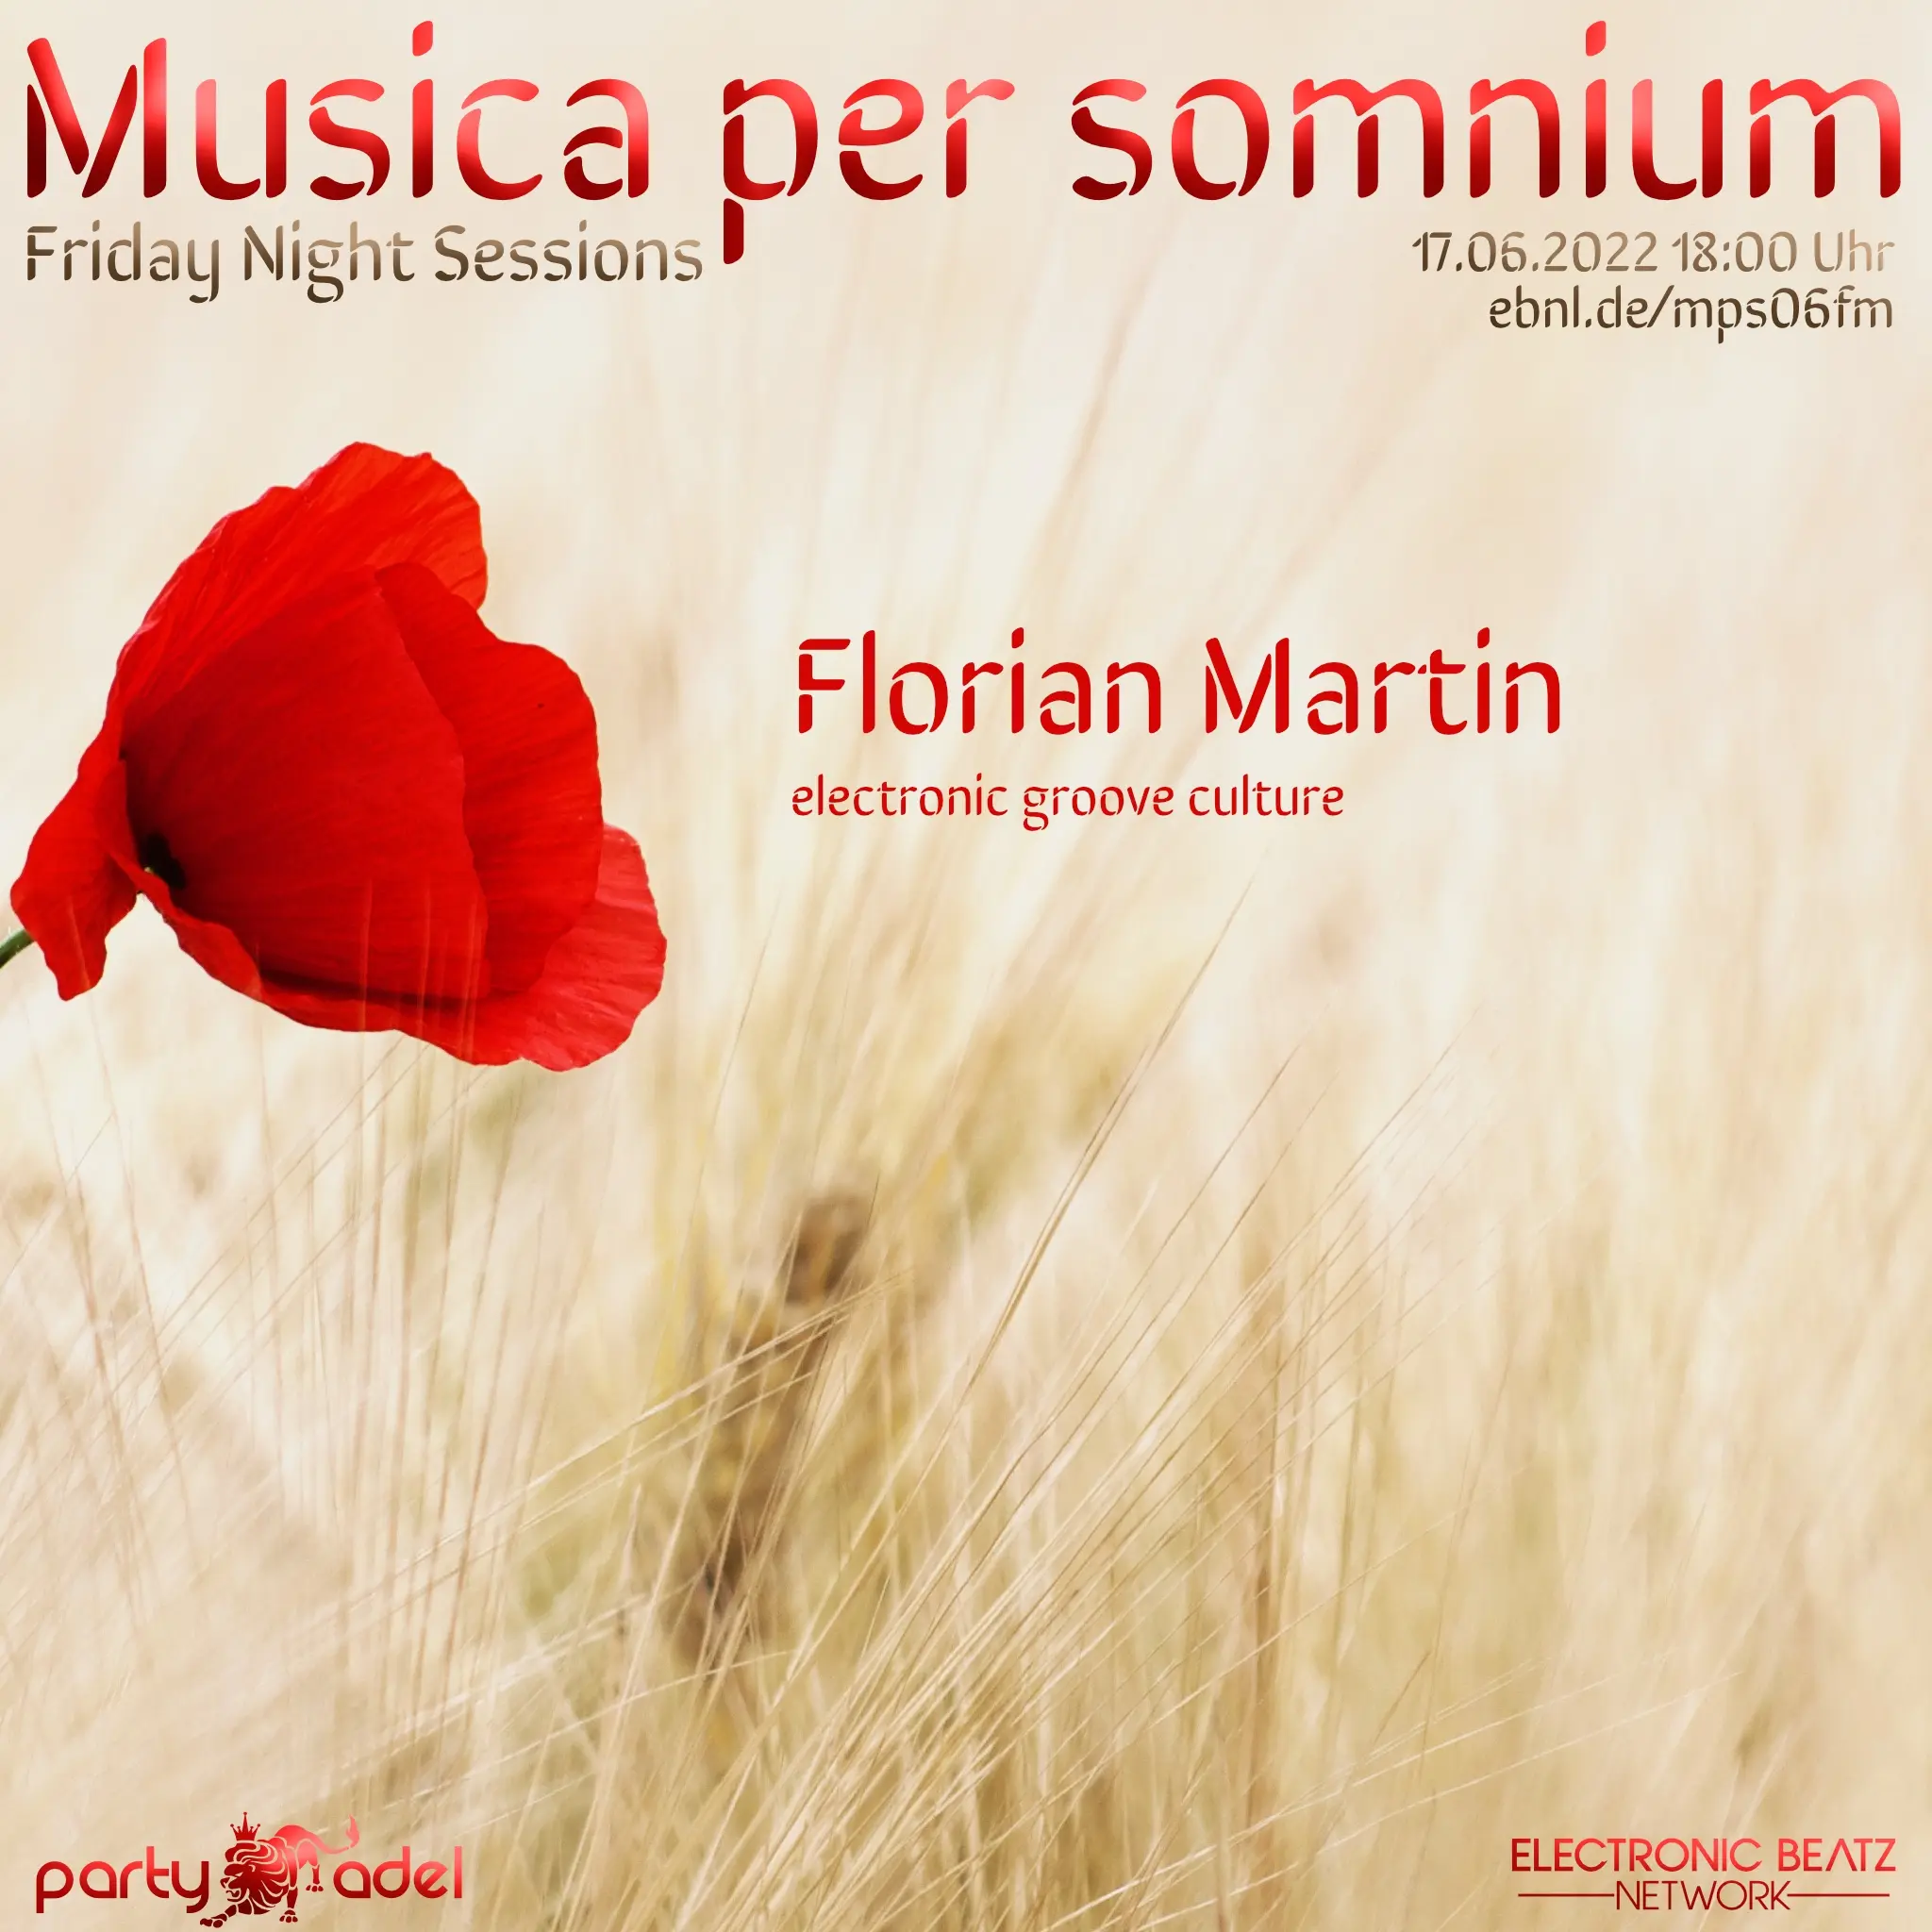 Florian Martin @ Musica per somnium (17.06.2022)